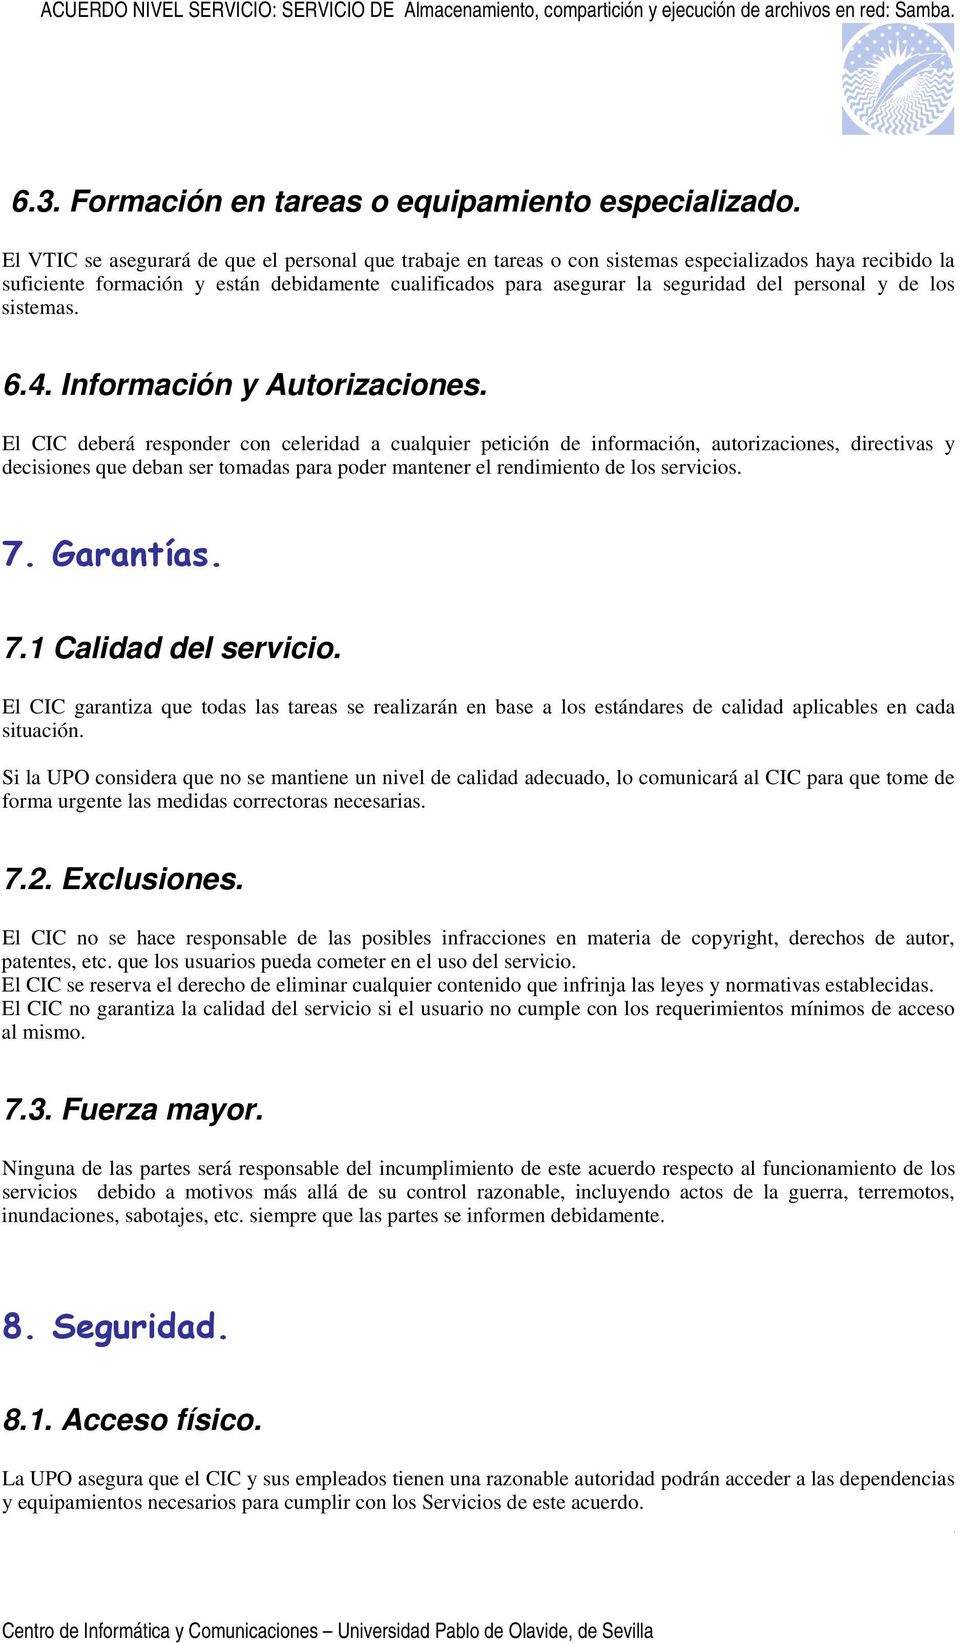 personal y de los sistemas. 6.4. Información y Autorizaciones.